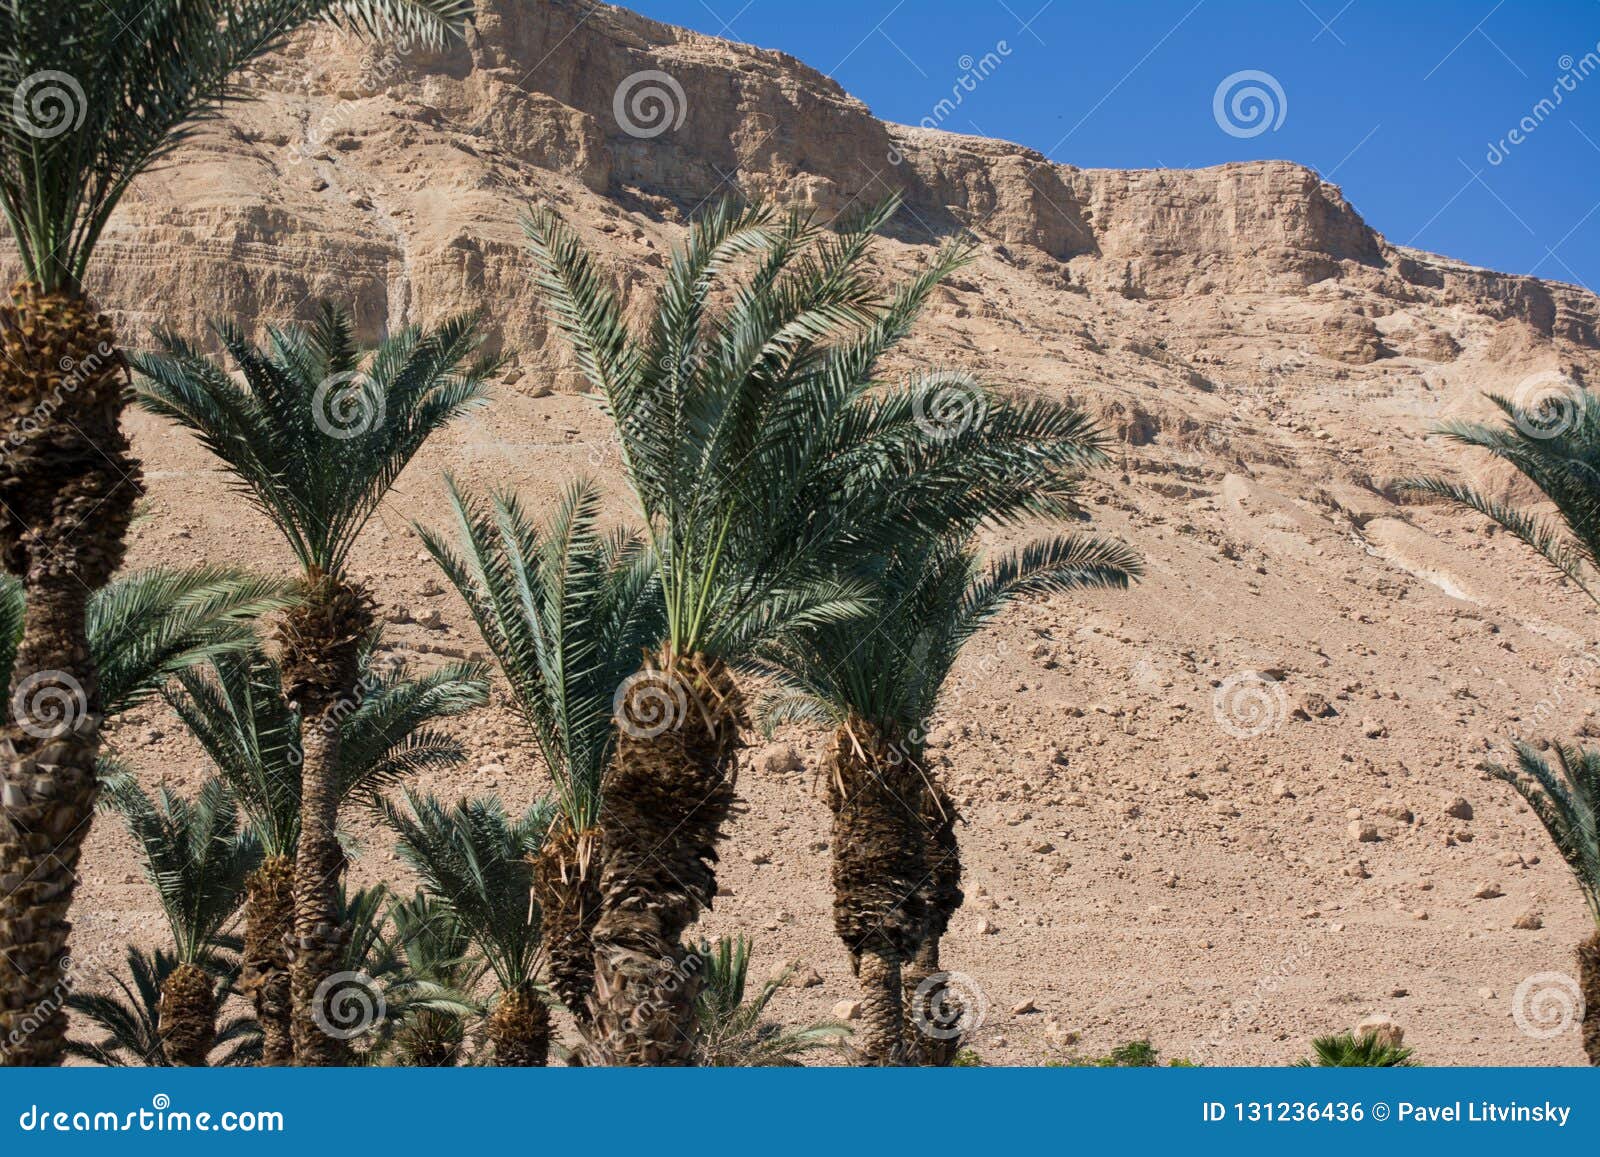 arabian mideast scenic view. high palmtree in beautiful gorge formation en gedy, in national judean desert on shore of dead sea